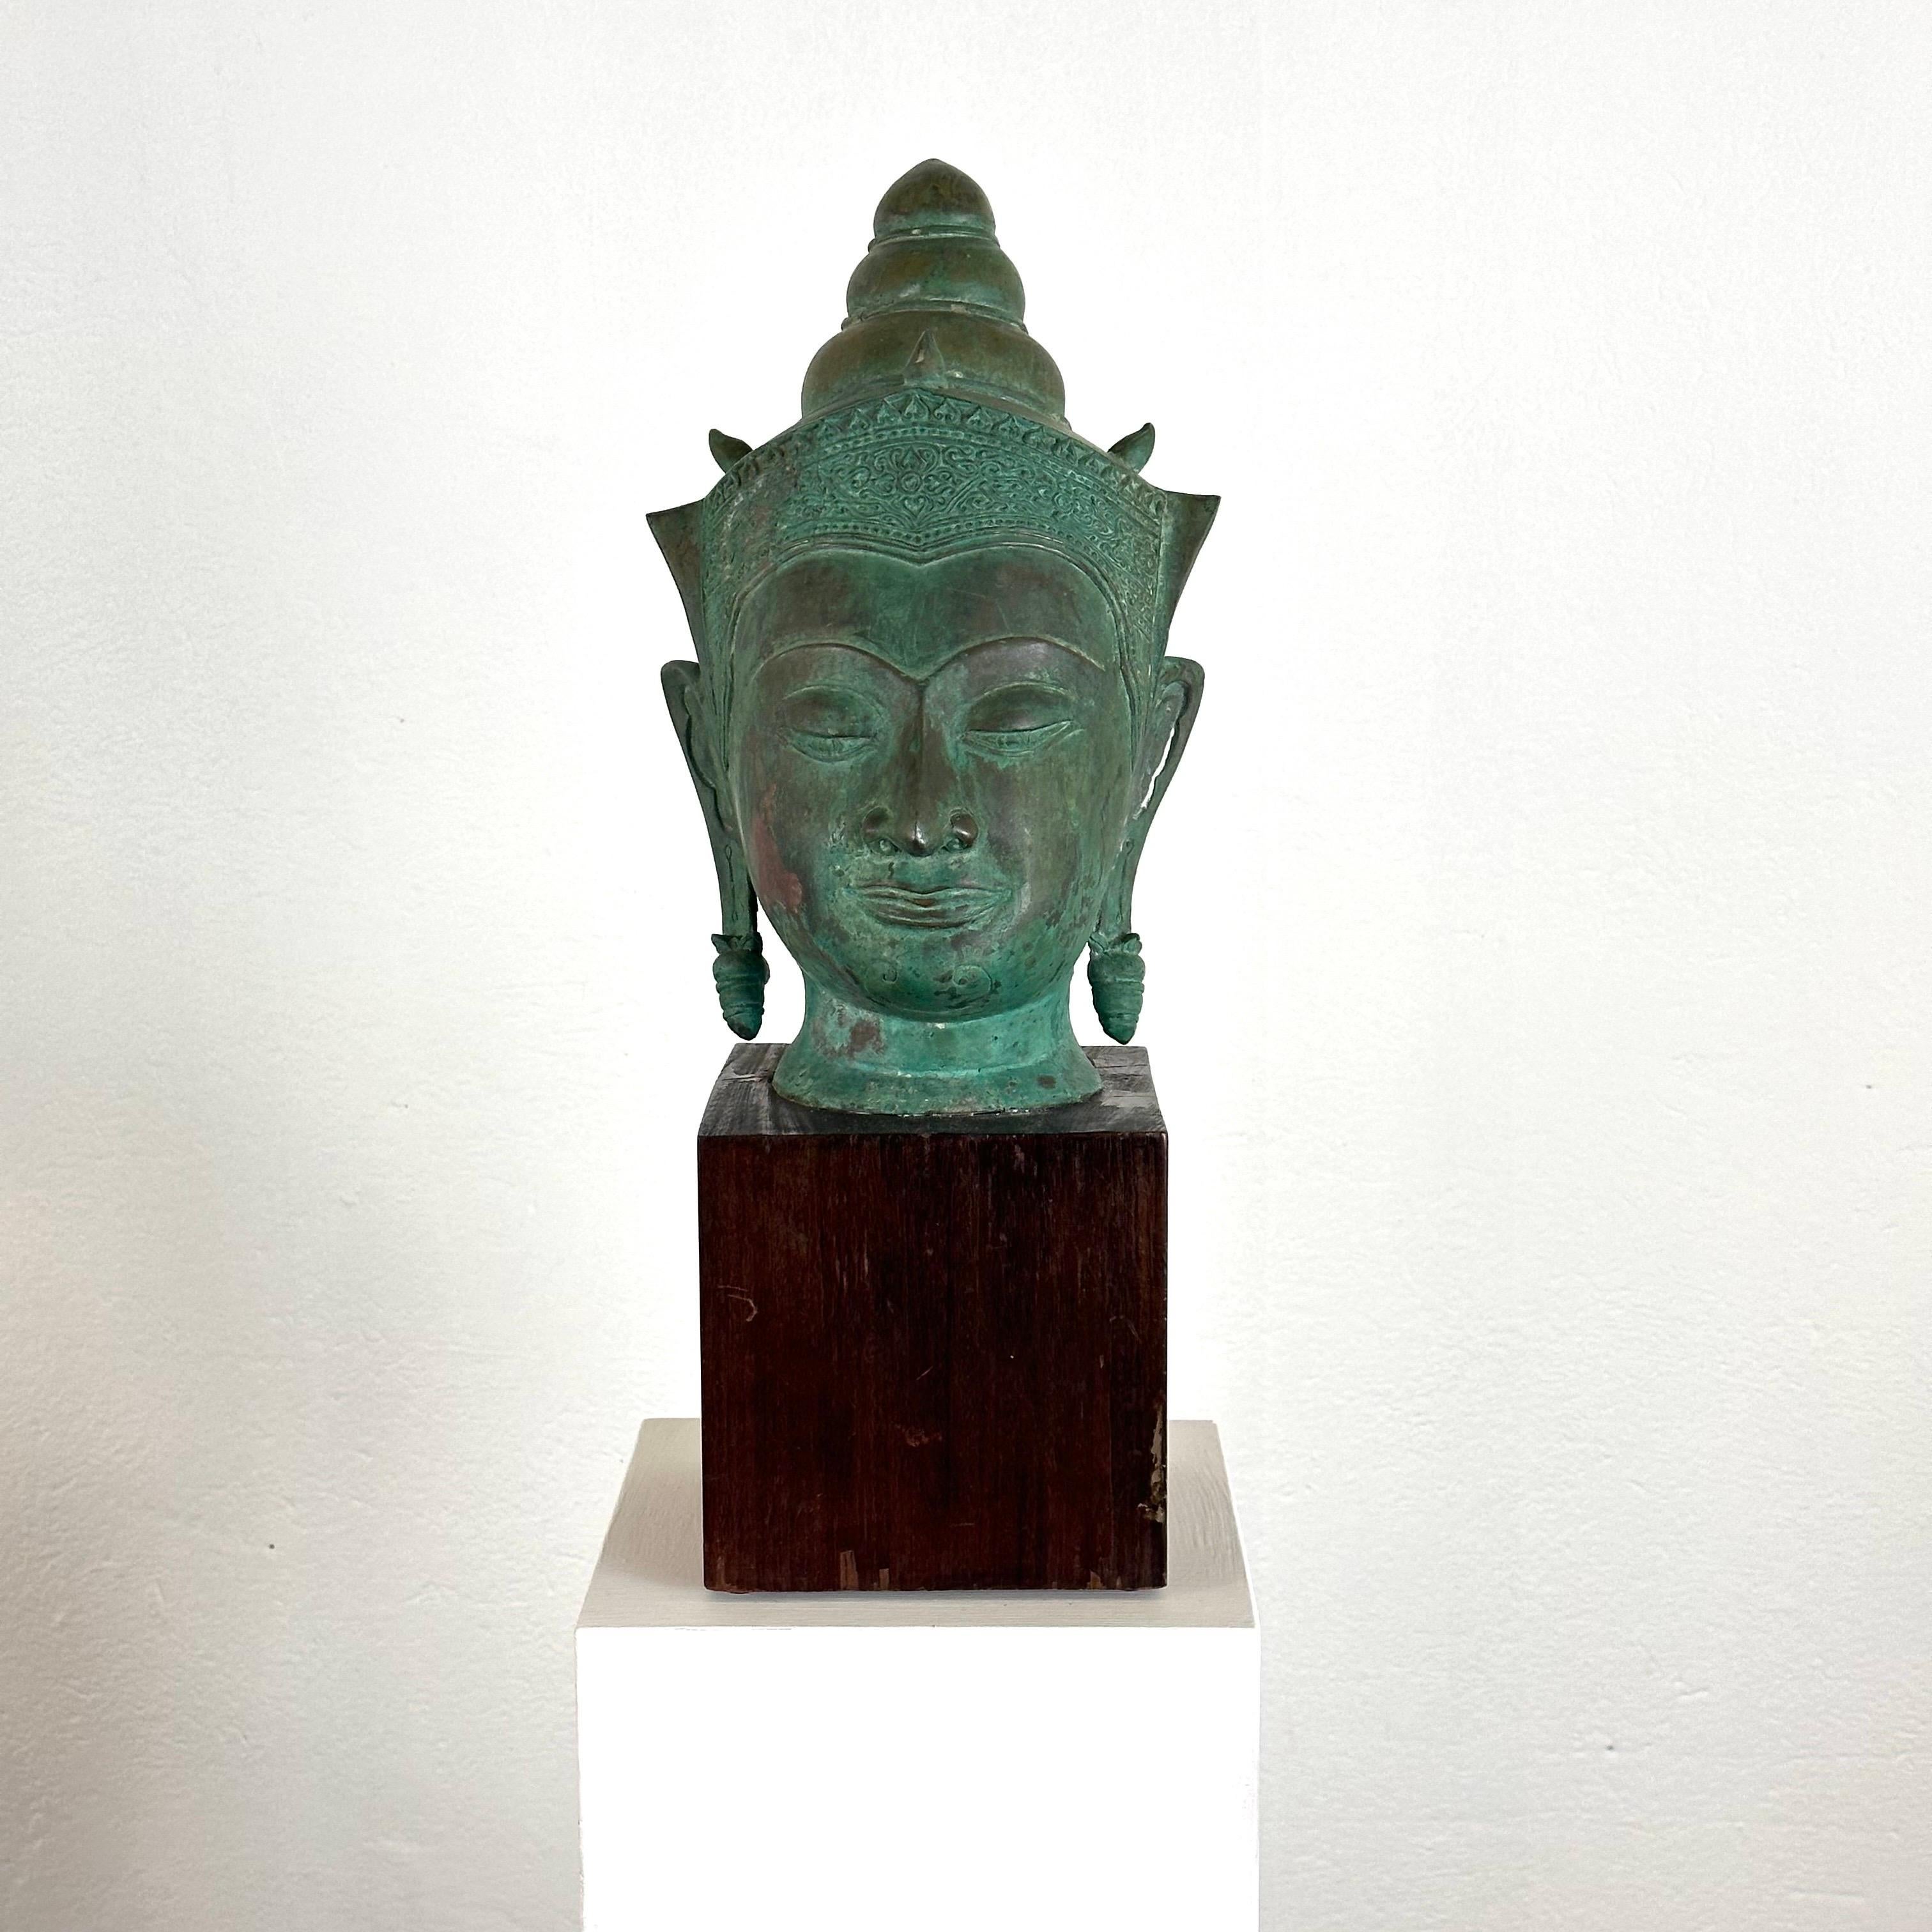 Plongez dans la beauté sereine de l'artisanat thaïlandais avec cette magnifique tête de bouddha en bronze du XIXe siècle, élégamment présentée sur un socle en bois. Irradiant une aura de tranquillité intemporelle, cette pièce captive par sa patine